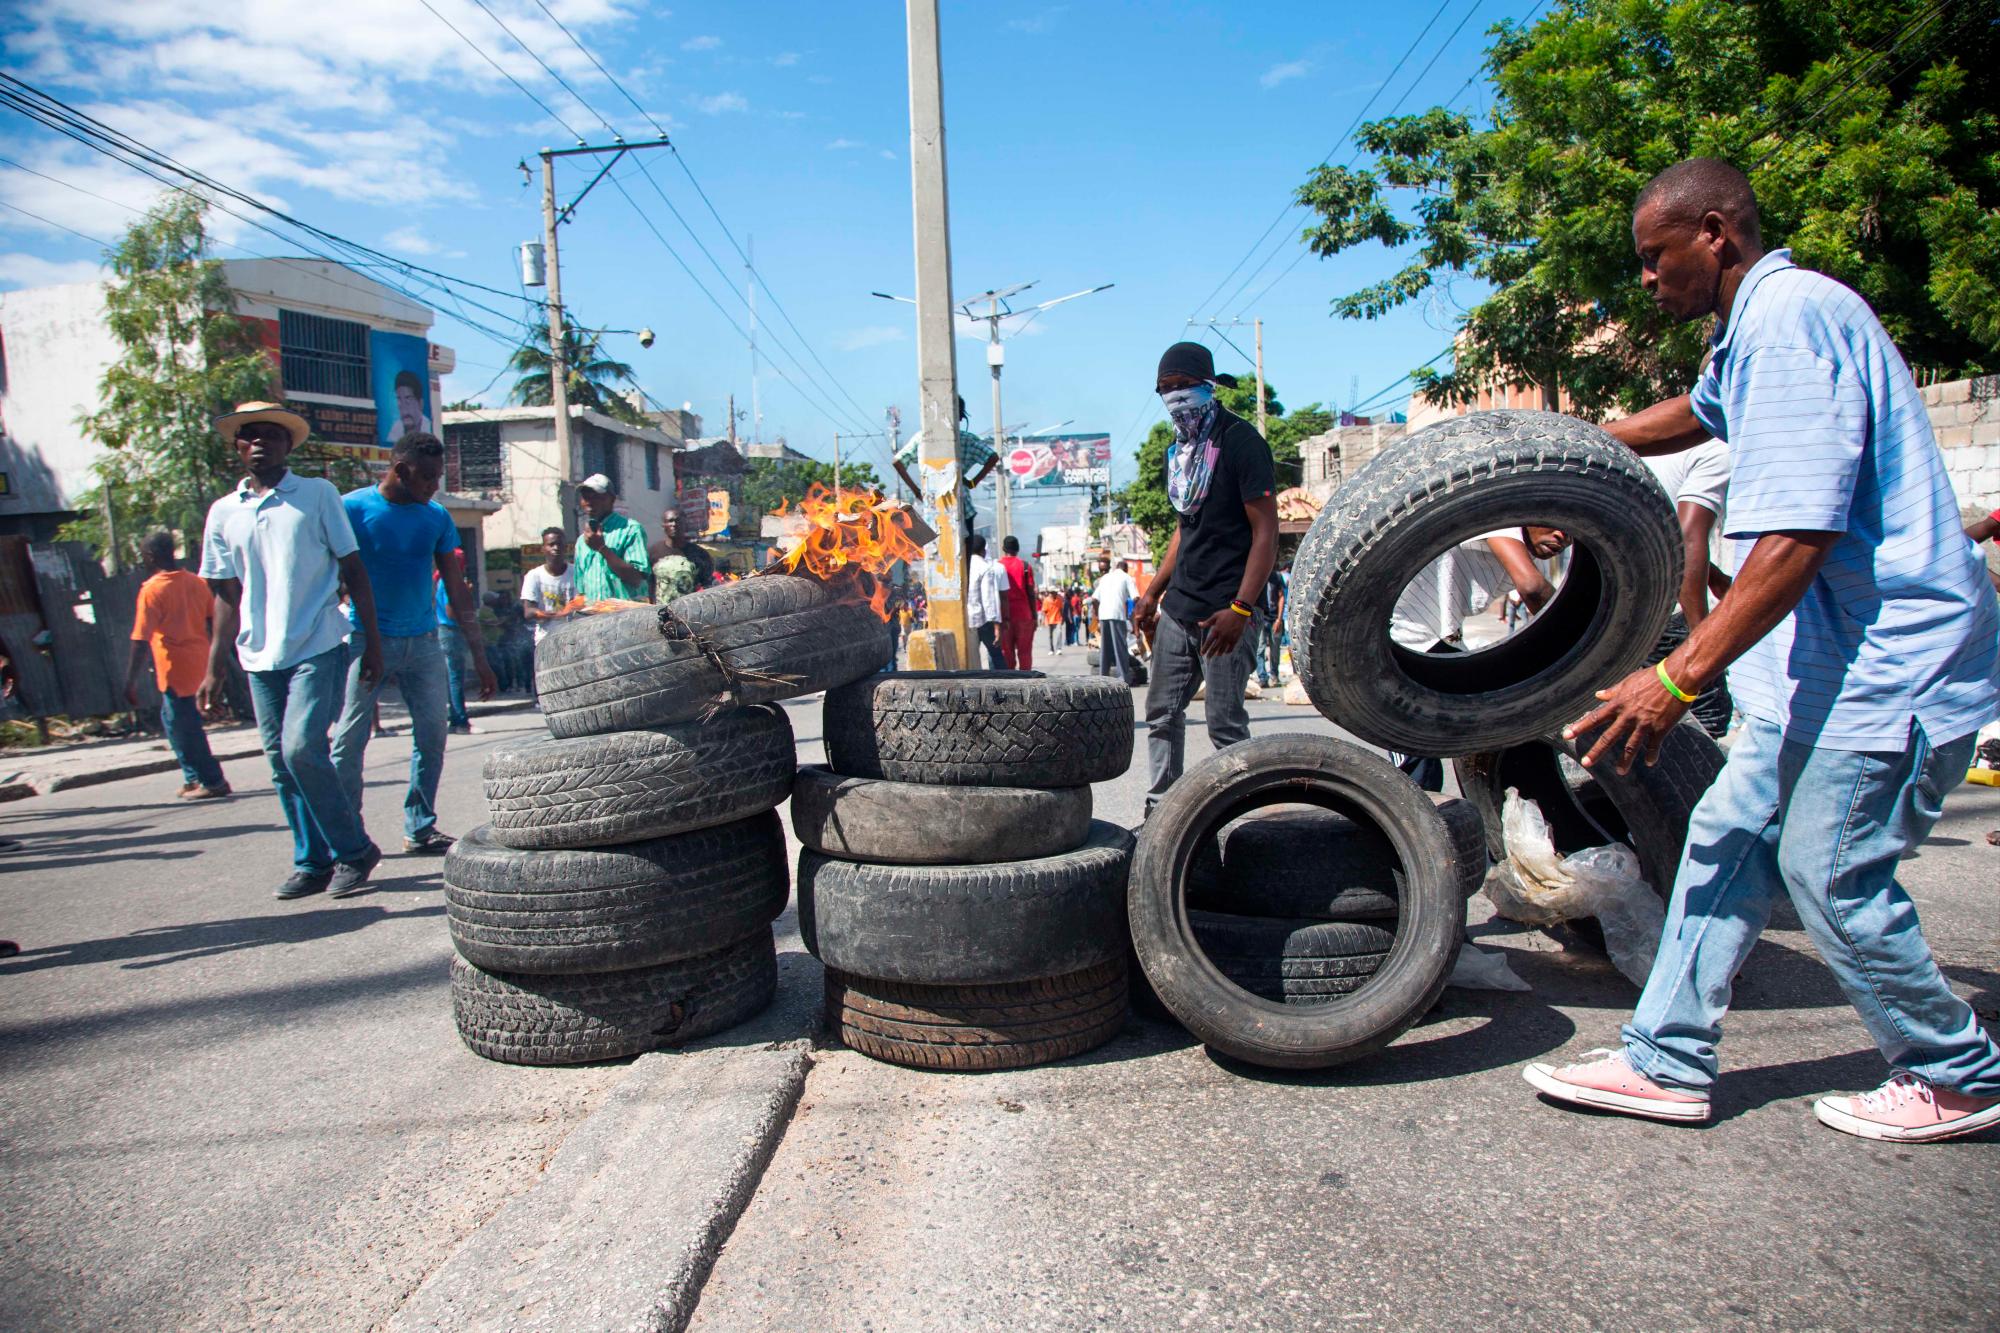 Manifestantes preparan barricadas durante una protesta, en Puerto Príncipe (Haití) hoy, domingo 18 de noviembre de 2018. Miles de haitianos salieron hoy a las calles para participar en una nueva protesta nacional contra la corrupción y la impunidad, que ha dejado al menos dos muertos y varios heridos.